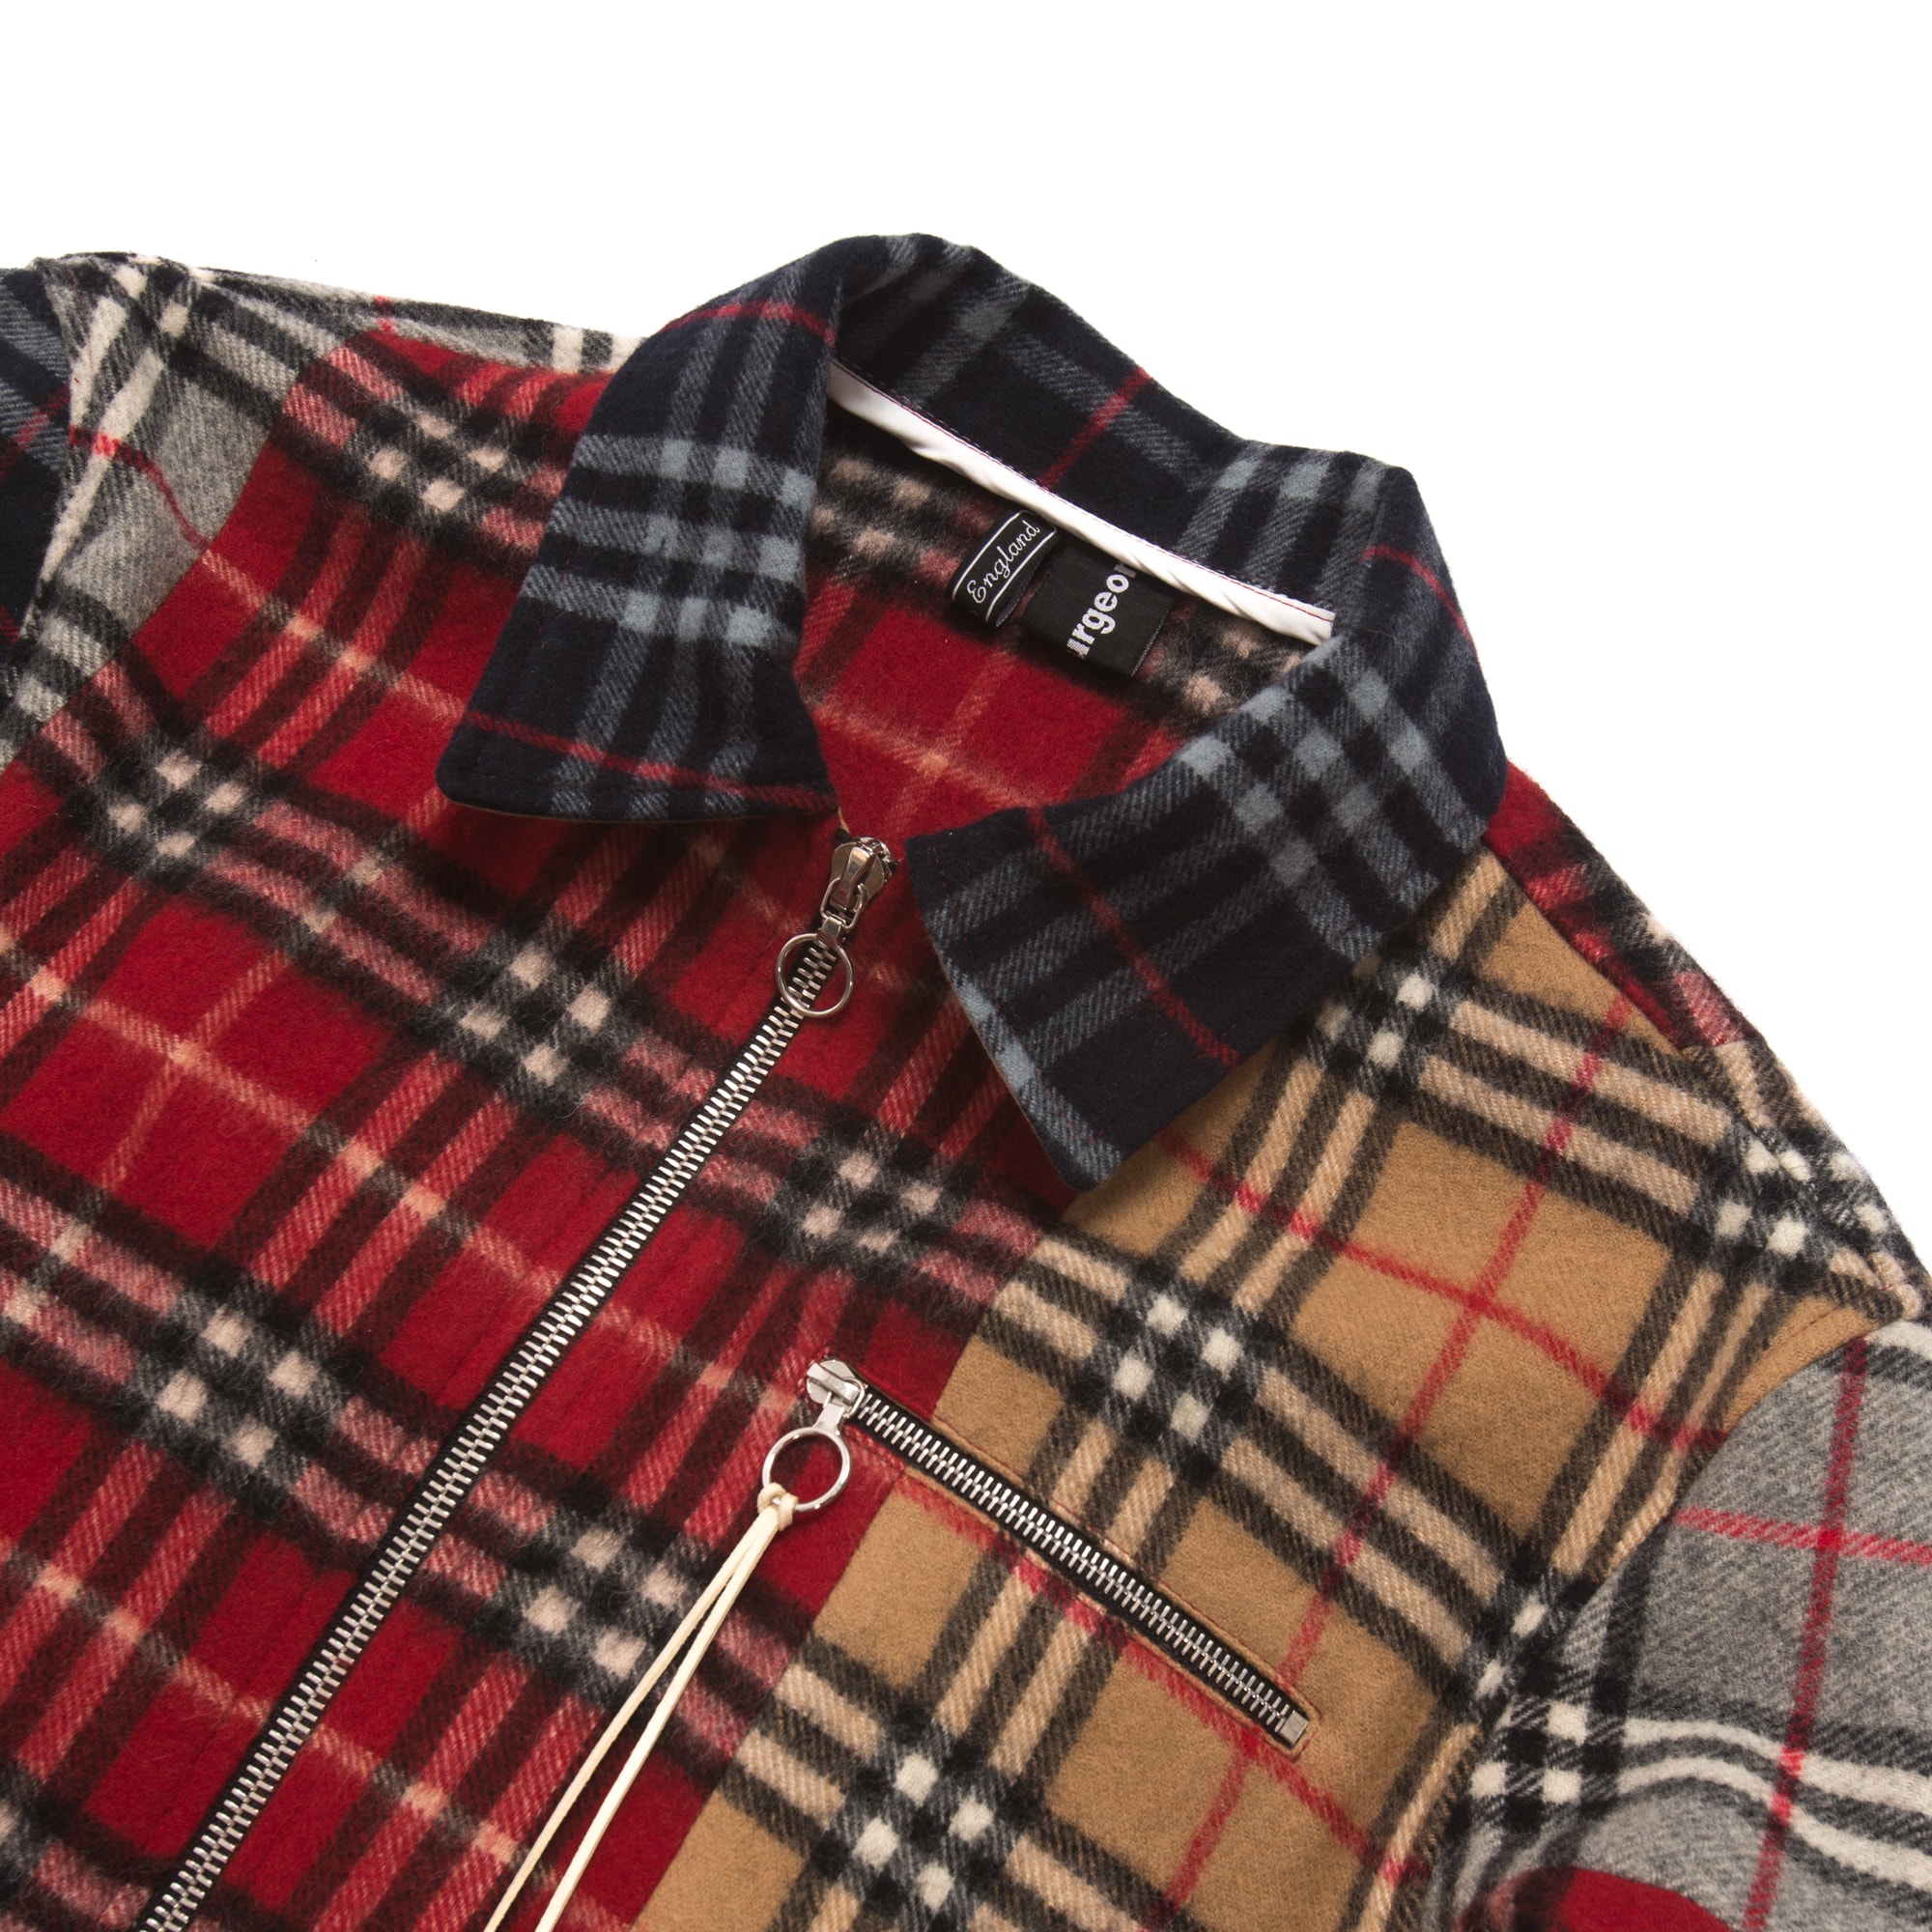 clothsurgeon 將 Burberry 復古格紋圍巾改造成拼接夾克